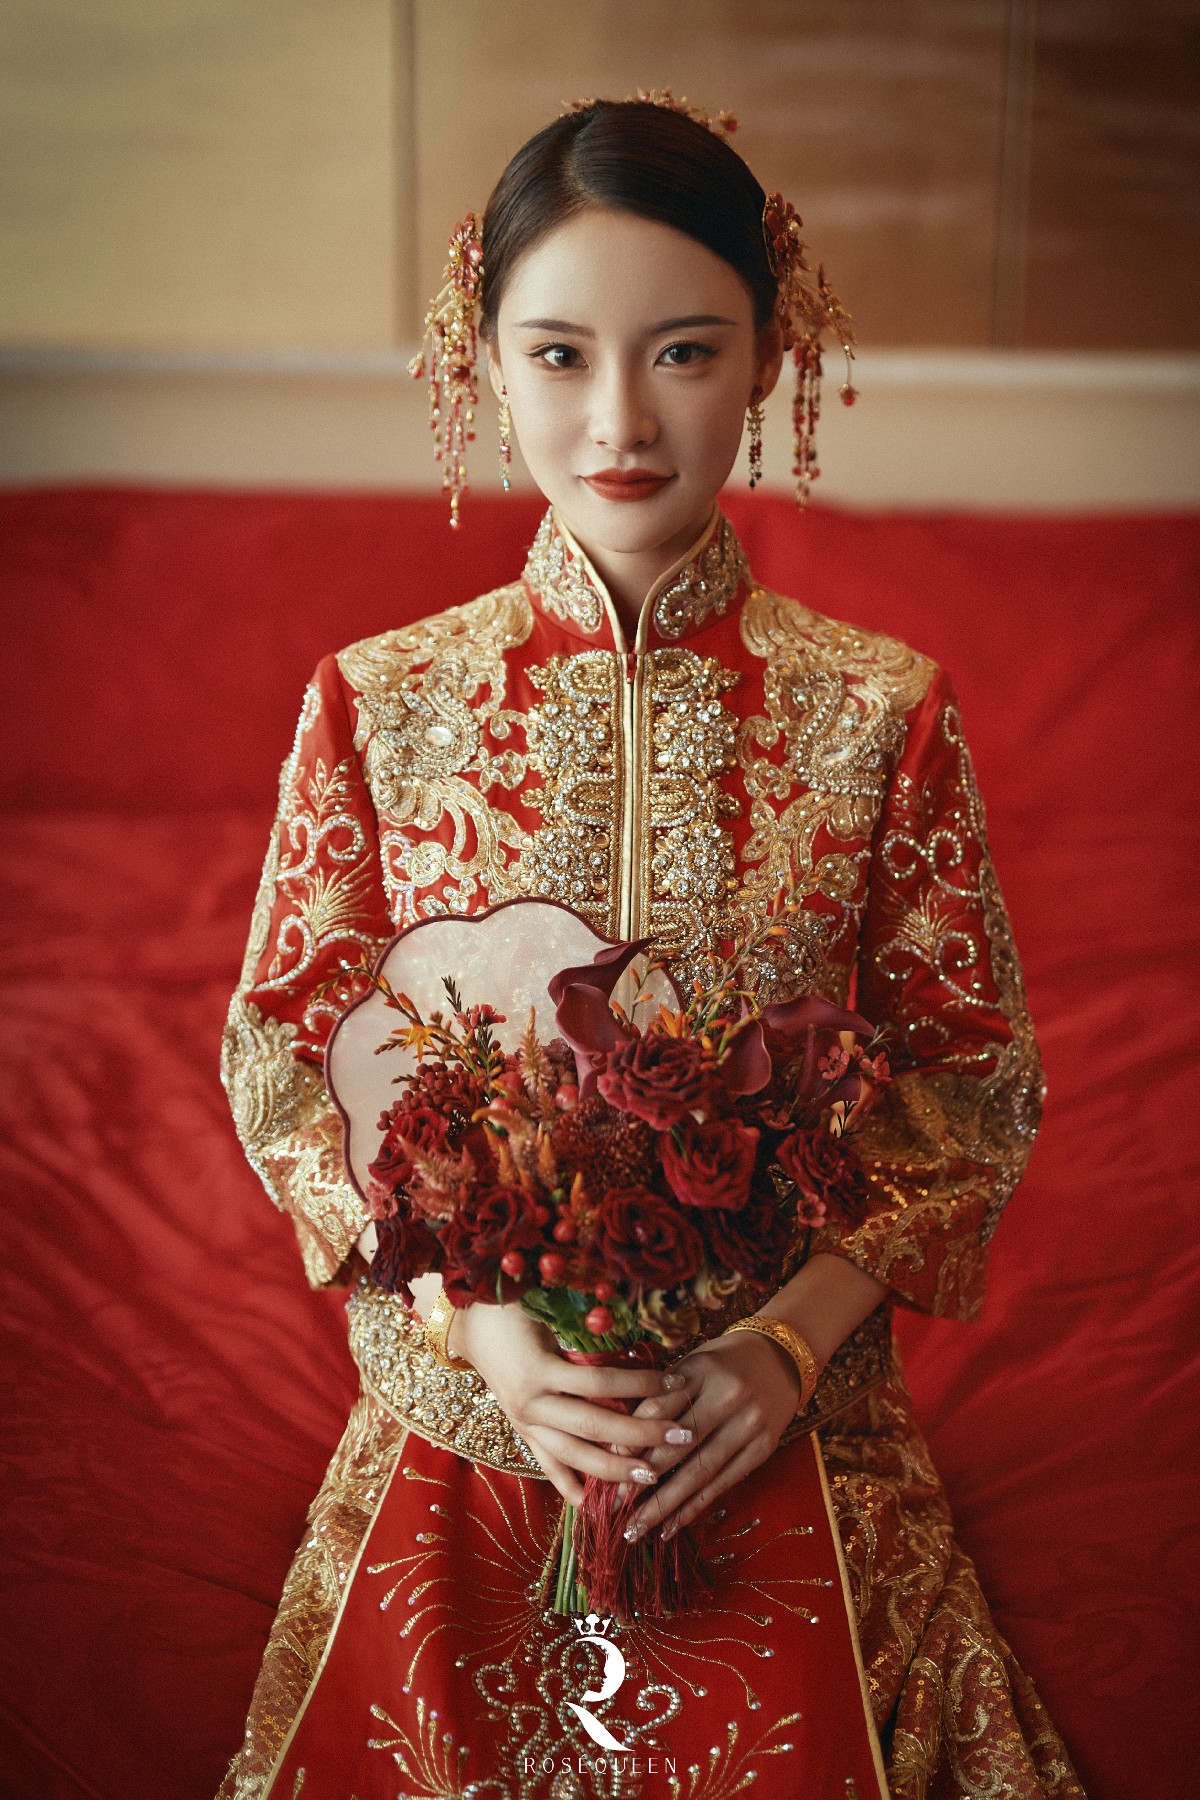 一辈子都看不腻的中式秀禾服婚纱照 - 知乎